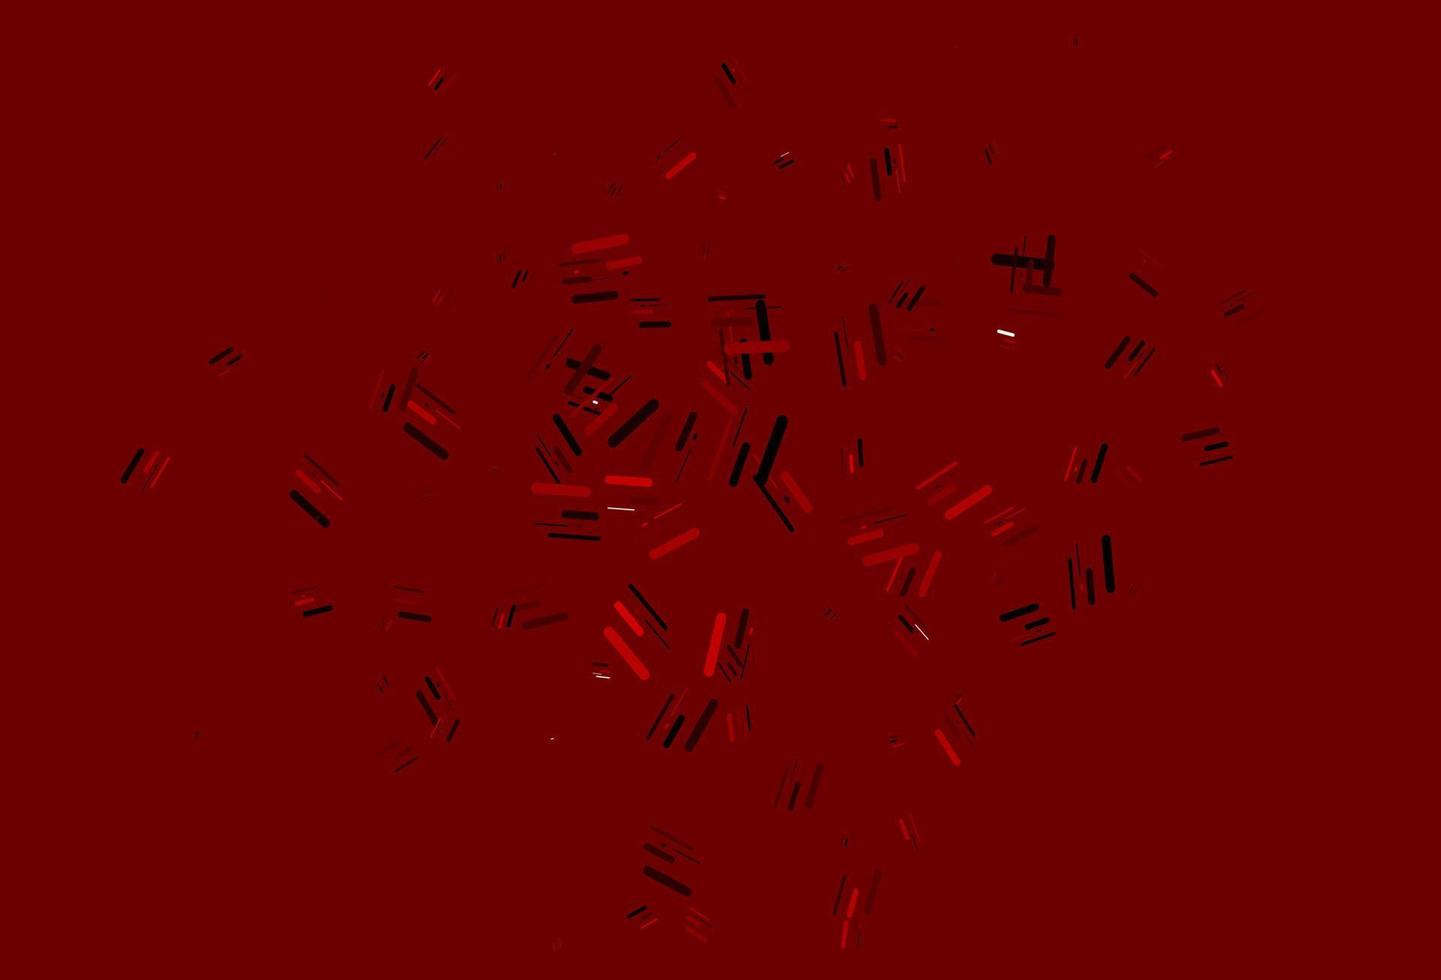 motif vectoriel rouge clair avec des lignes étroites.